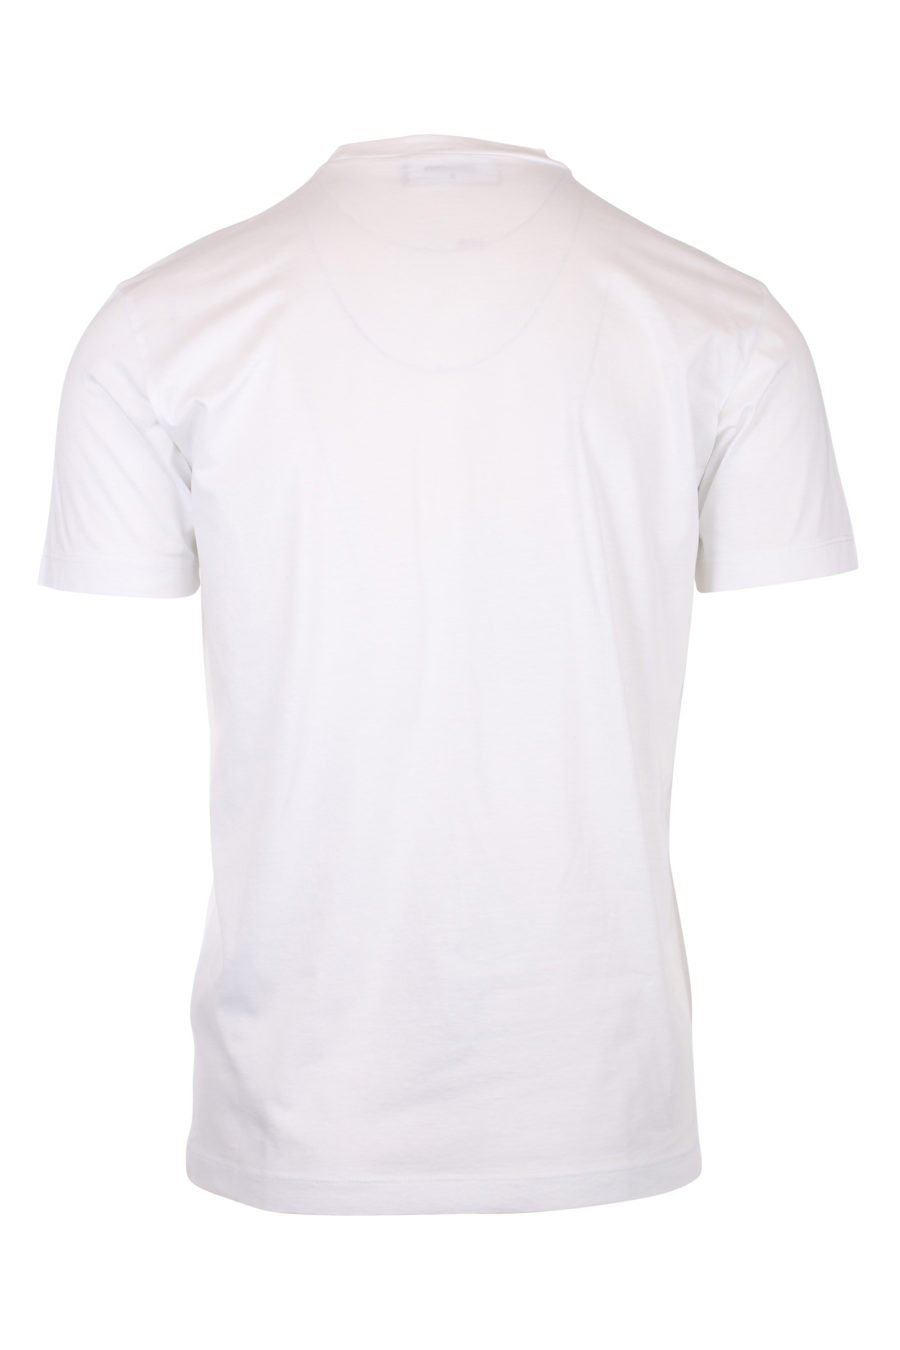 Weißes T-Shirt mit Baulogo - IMG 9769